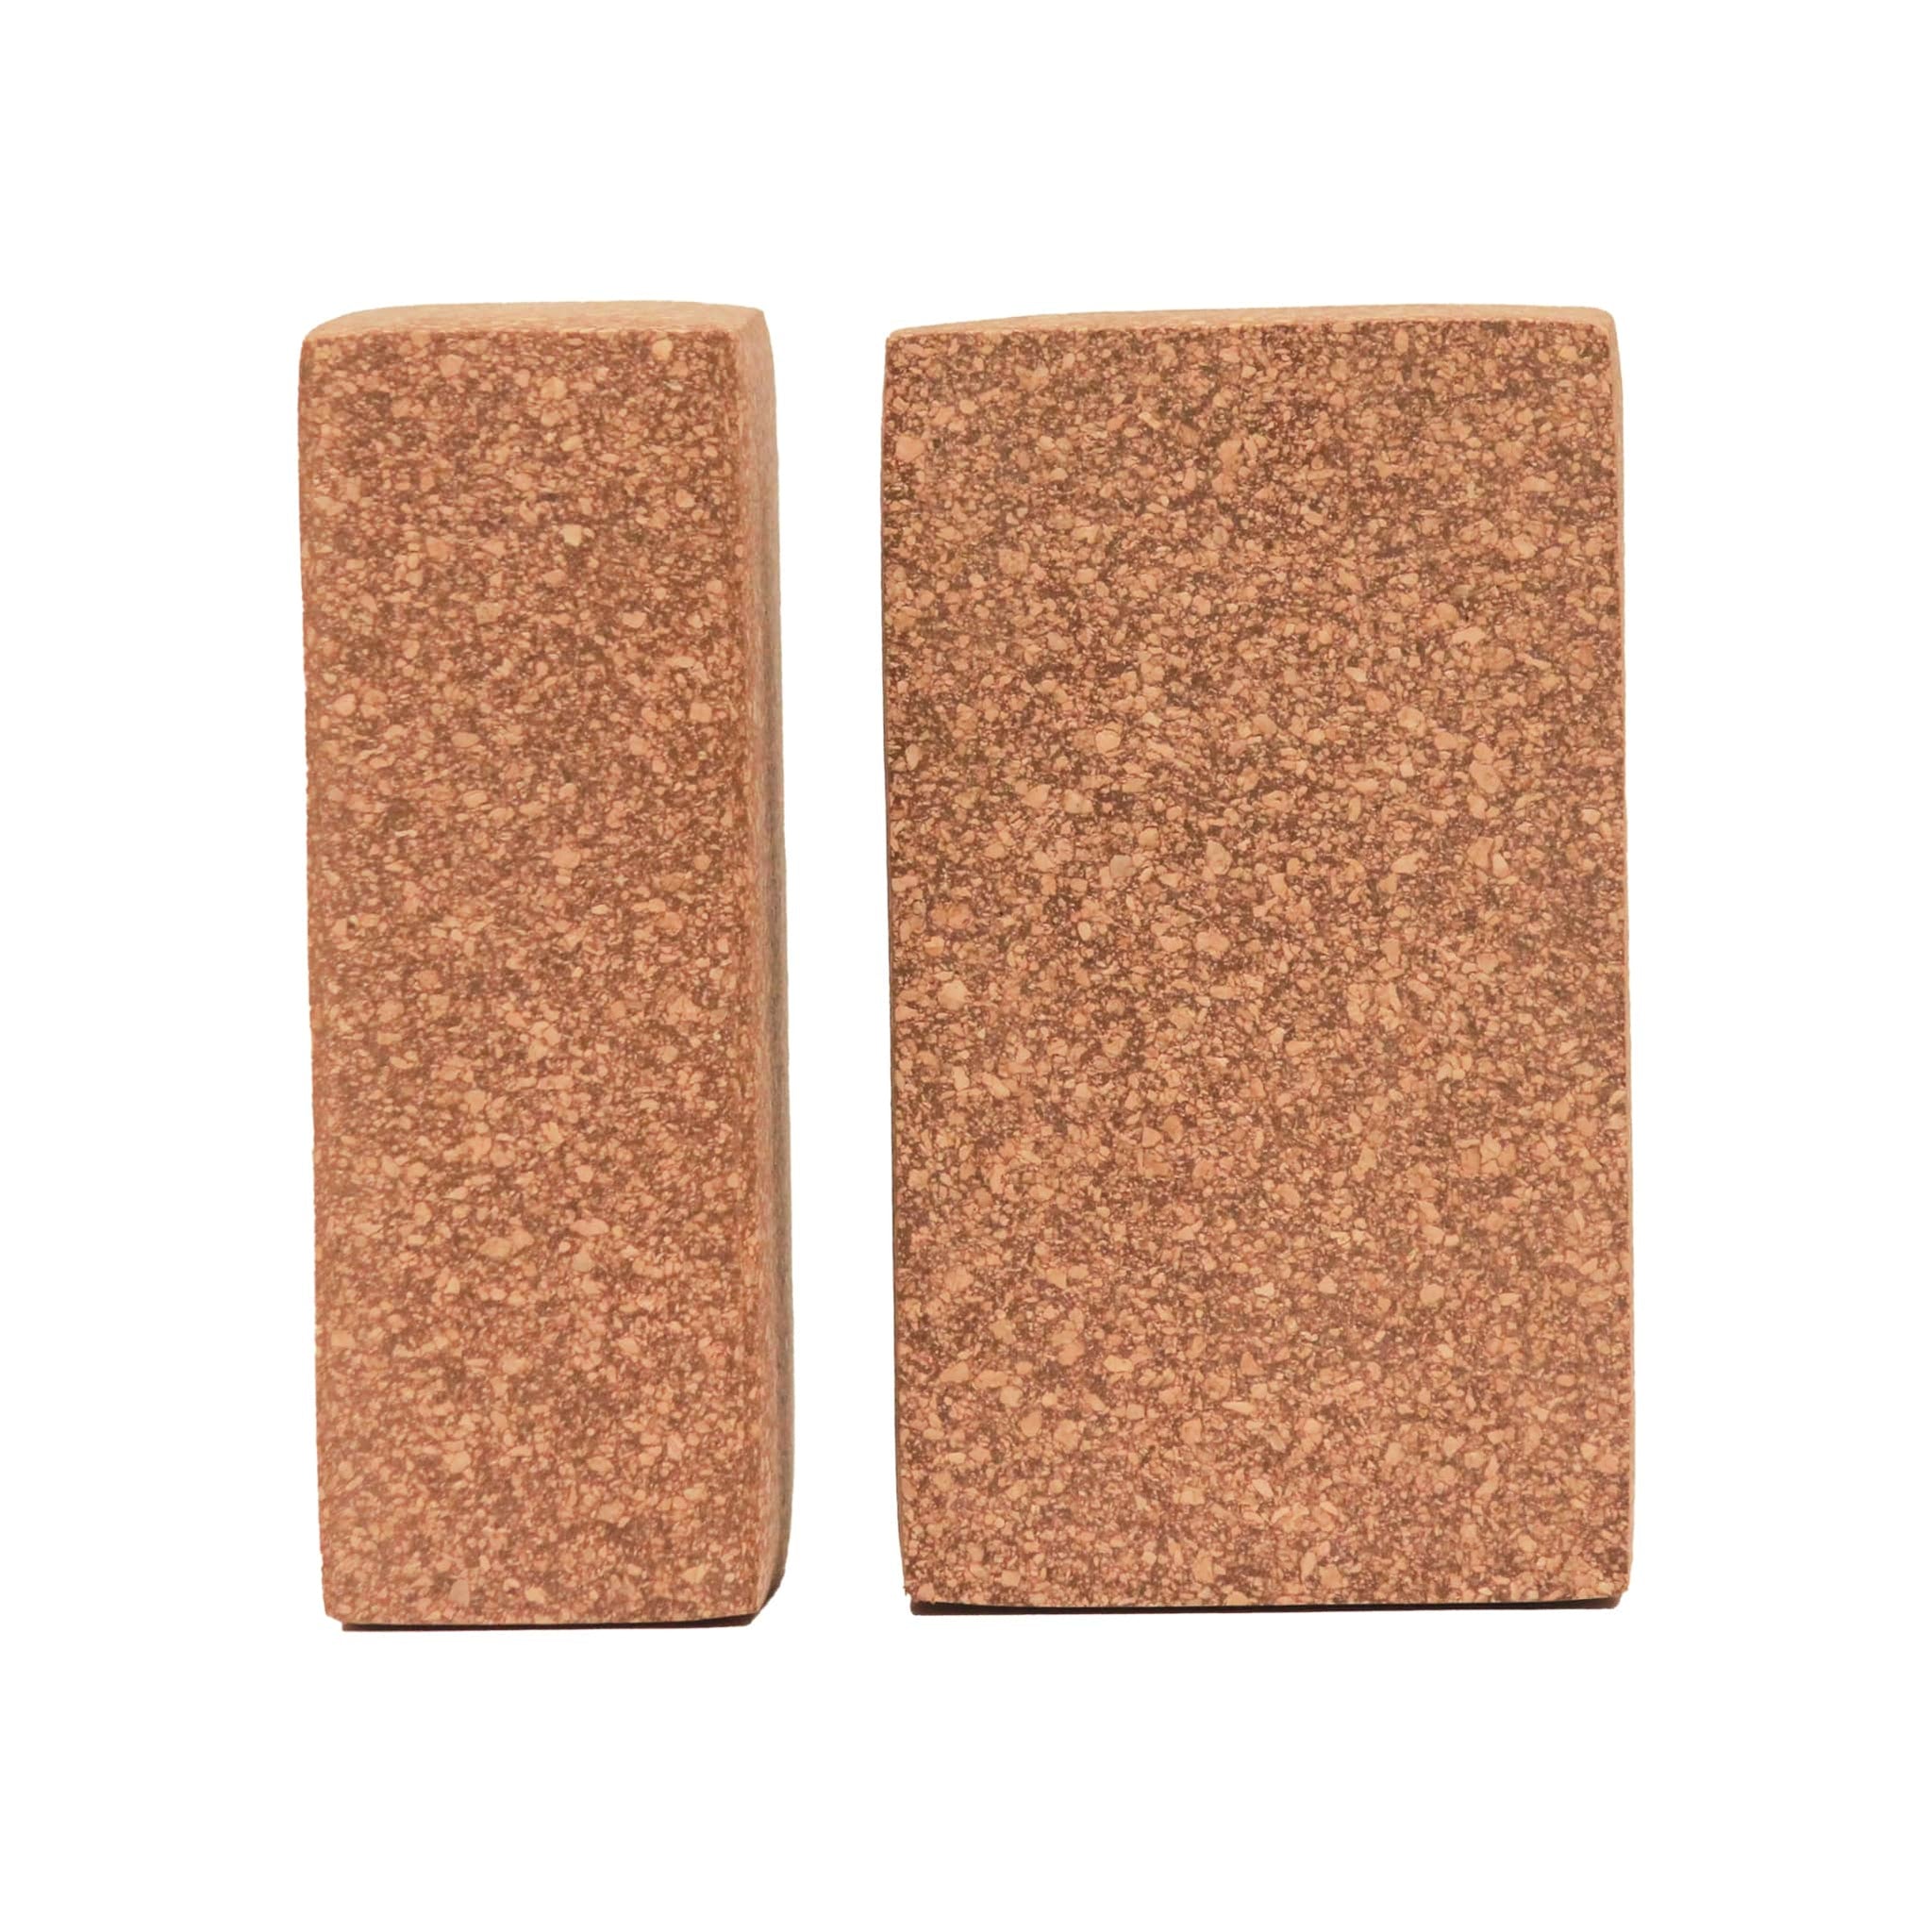 Yoga Bricks - Buy Eco-Friendly Sthairya Cork Yoga Bricks (Set of 2) Online